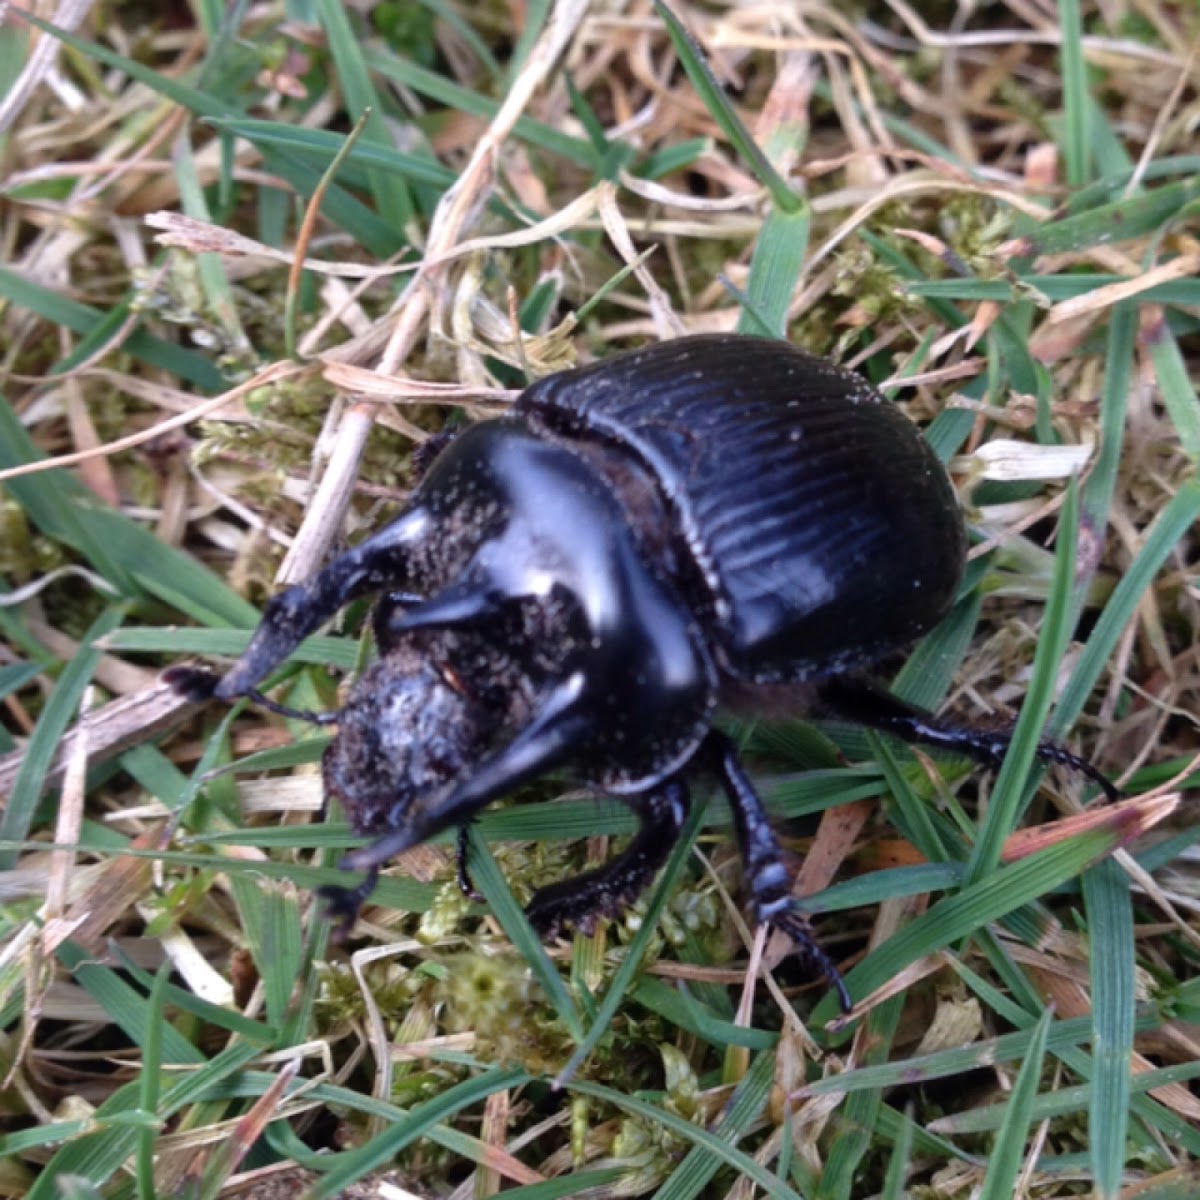 Minotaur beetle